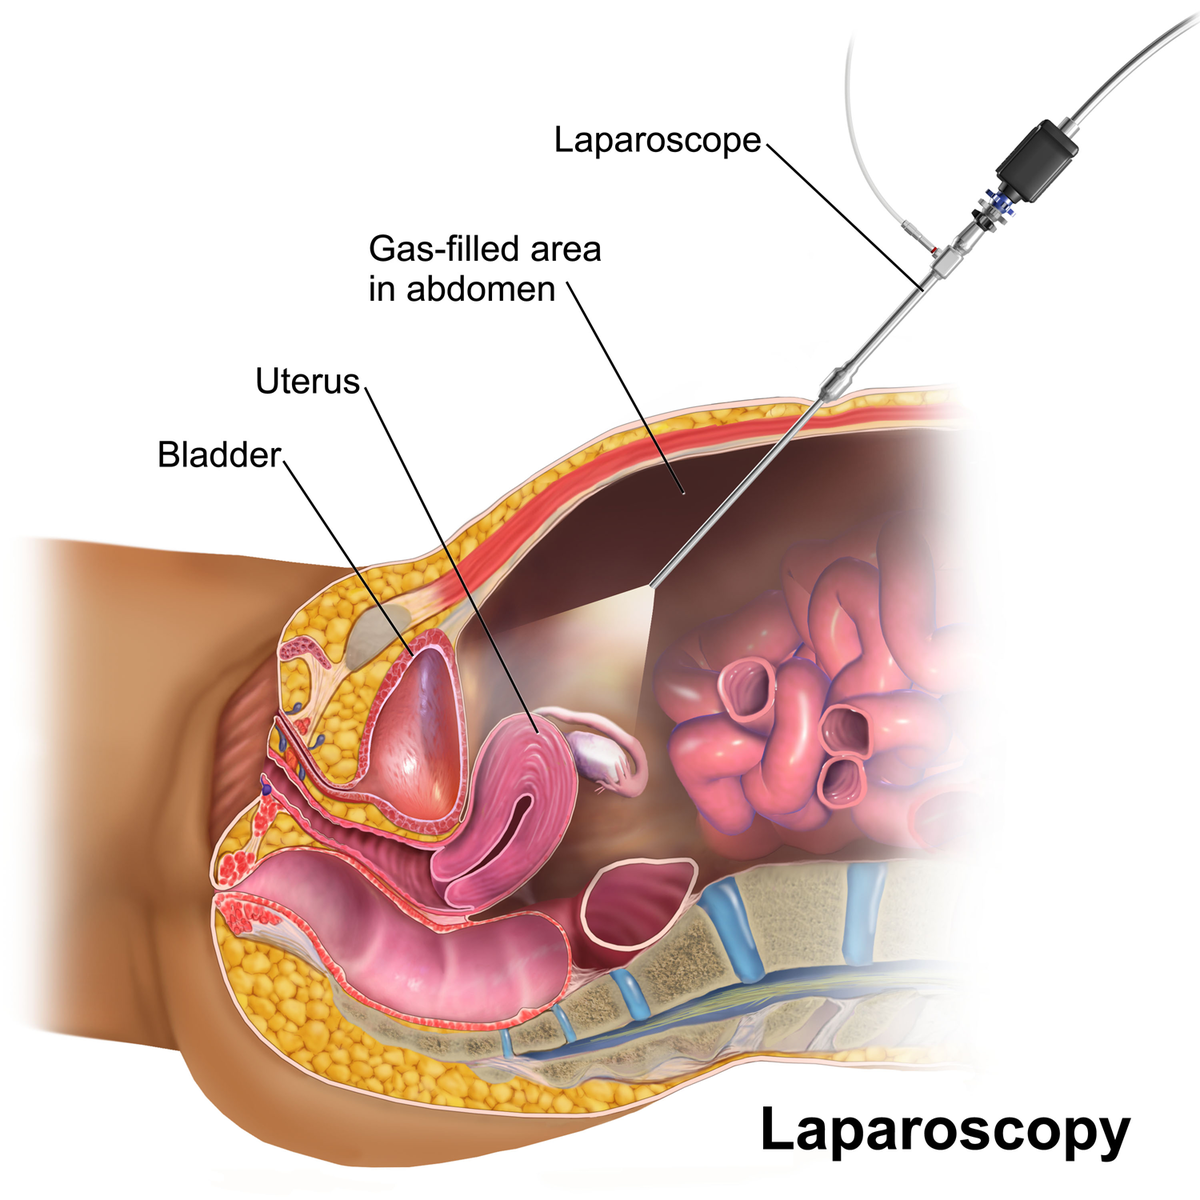 La cœlioscopie opératoire en Tunisie, permet de traiter une grossesse extra-utérine, un kyste de l'ovaire, une endométriose ou des adhérences.